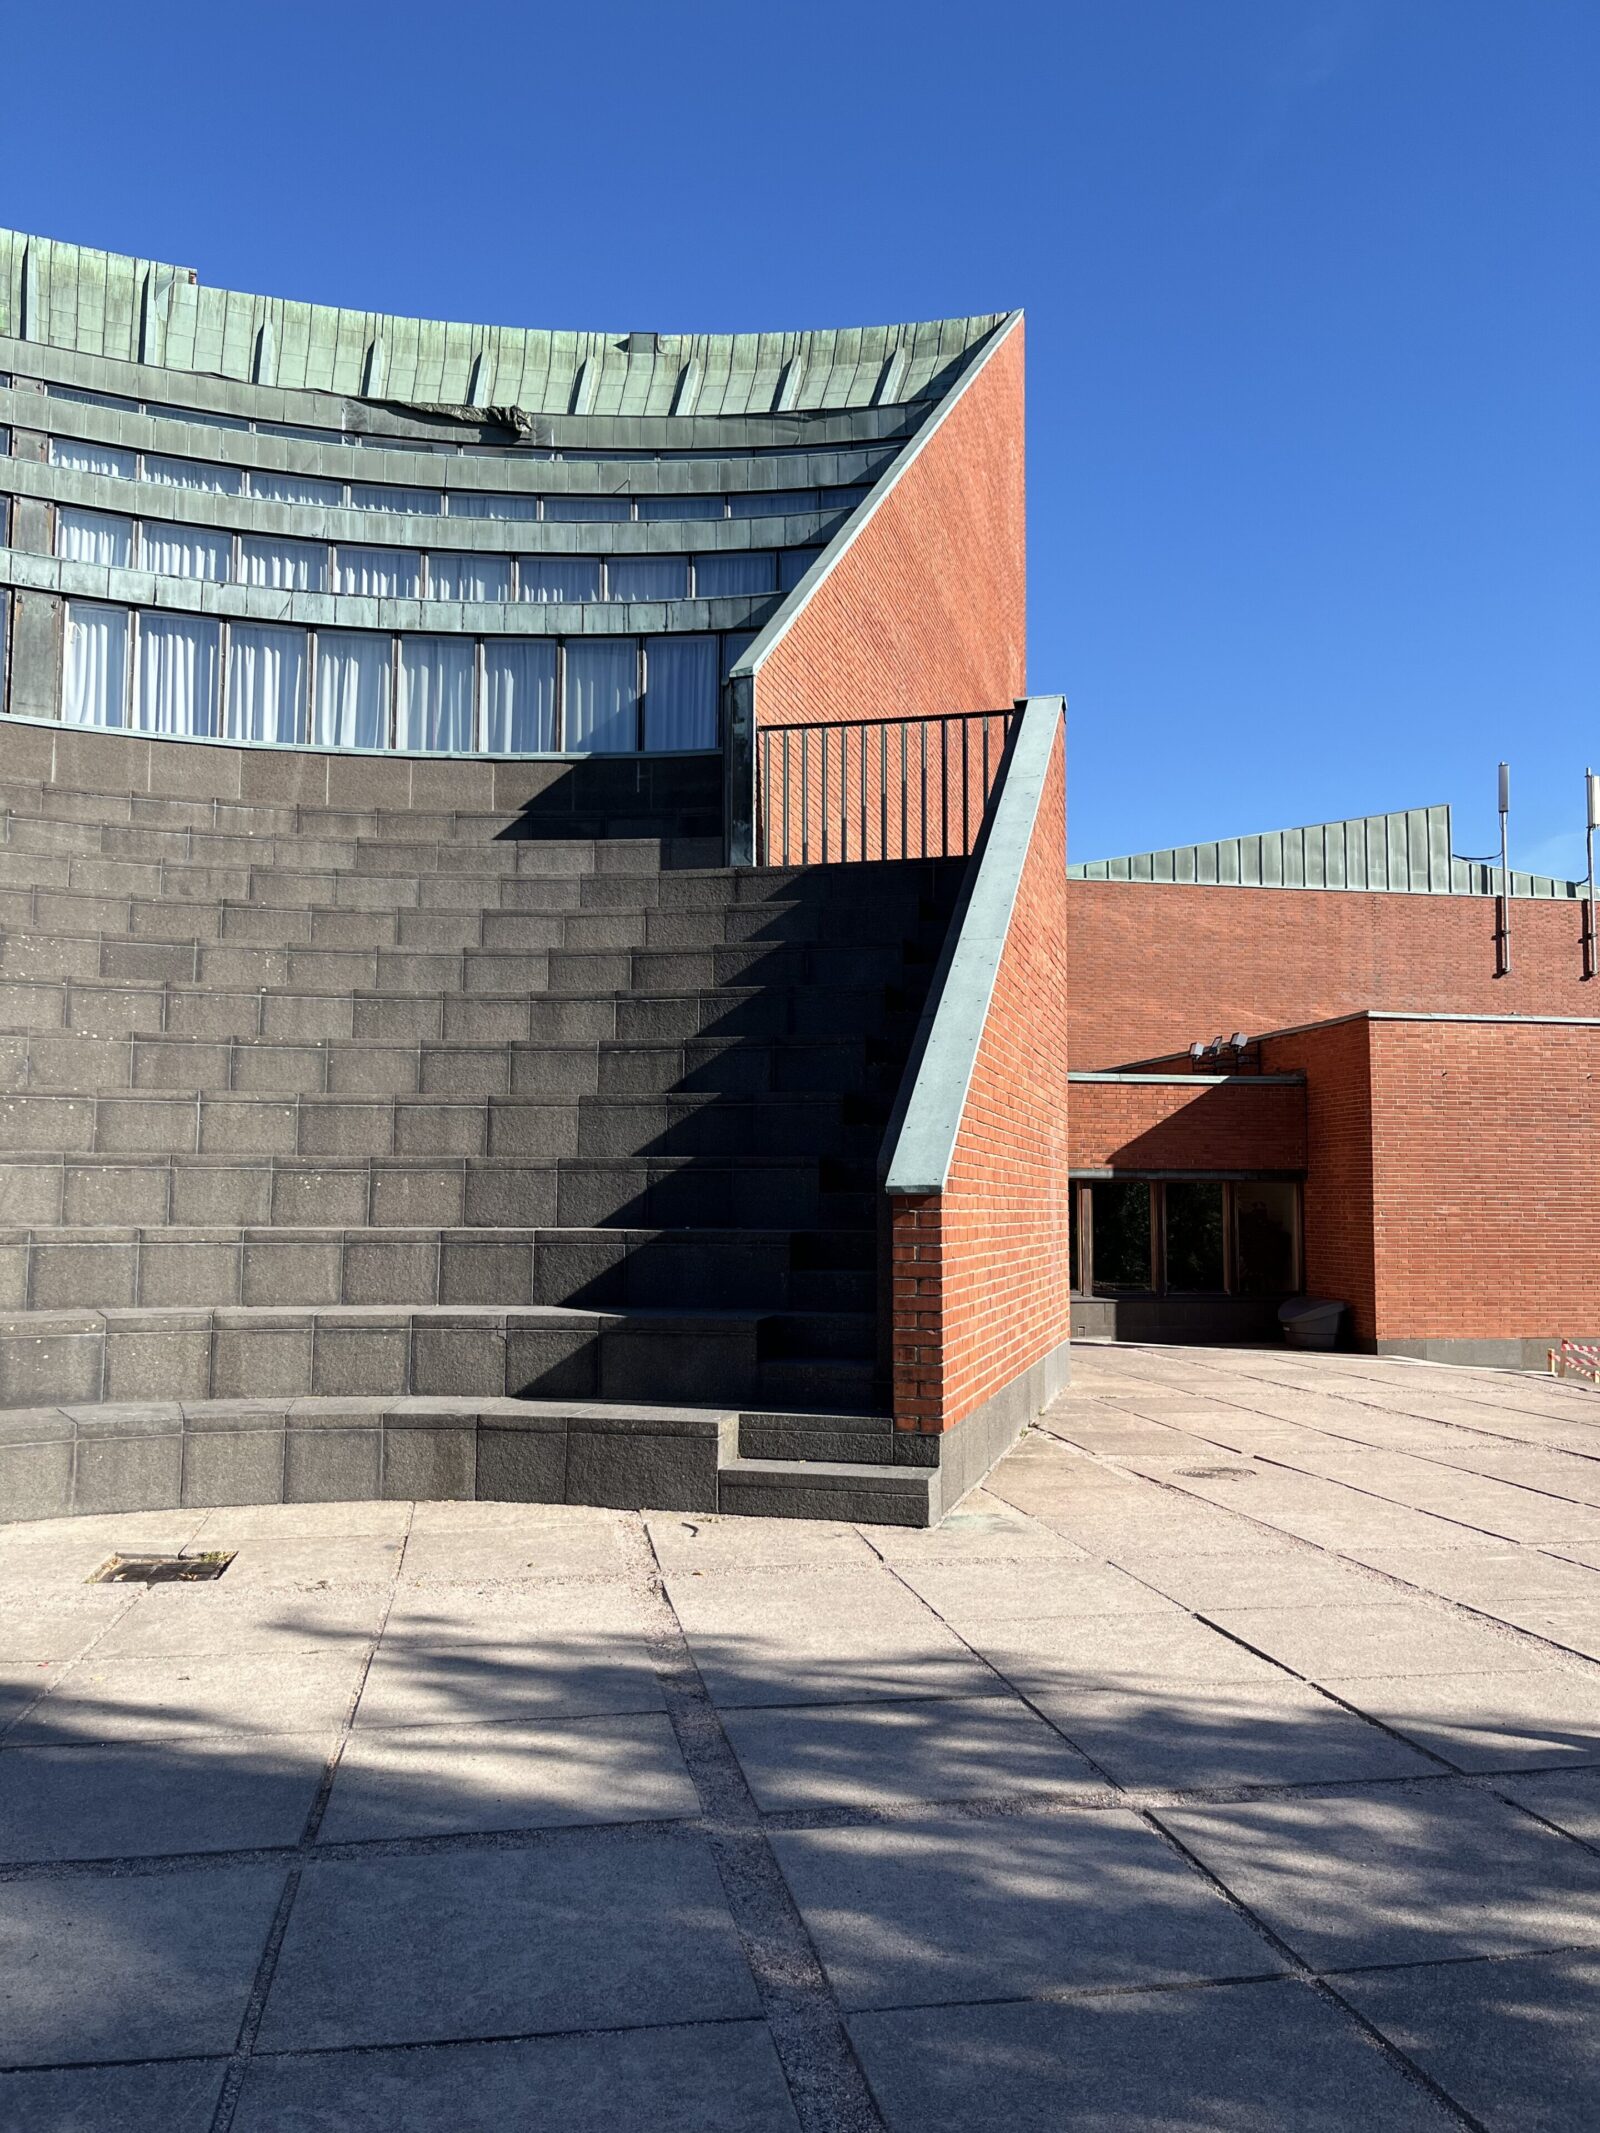 『アアルト大学』の謎の階段